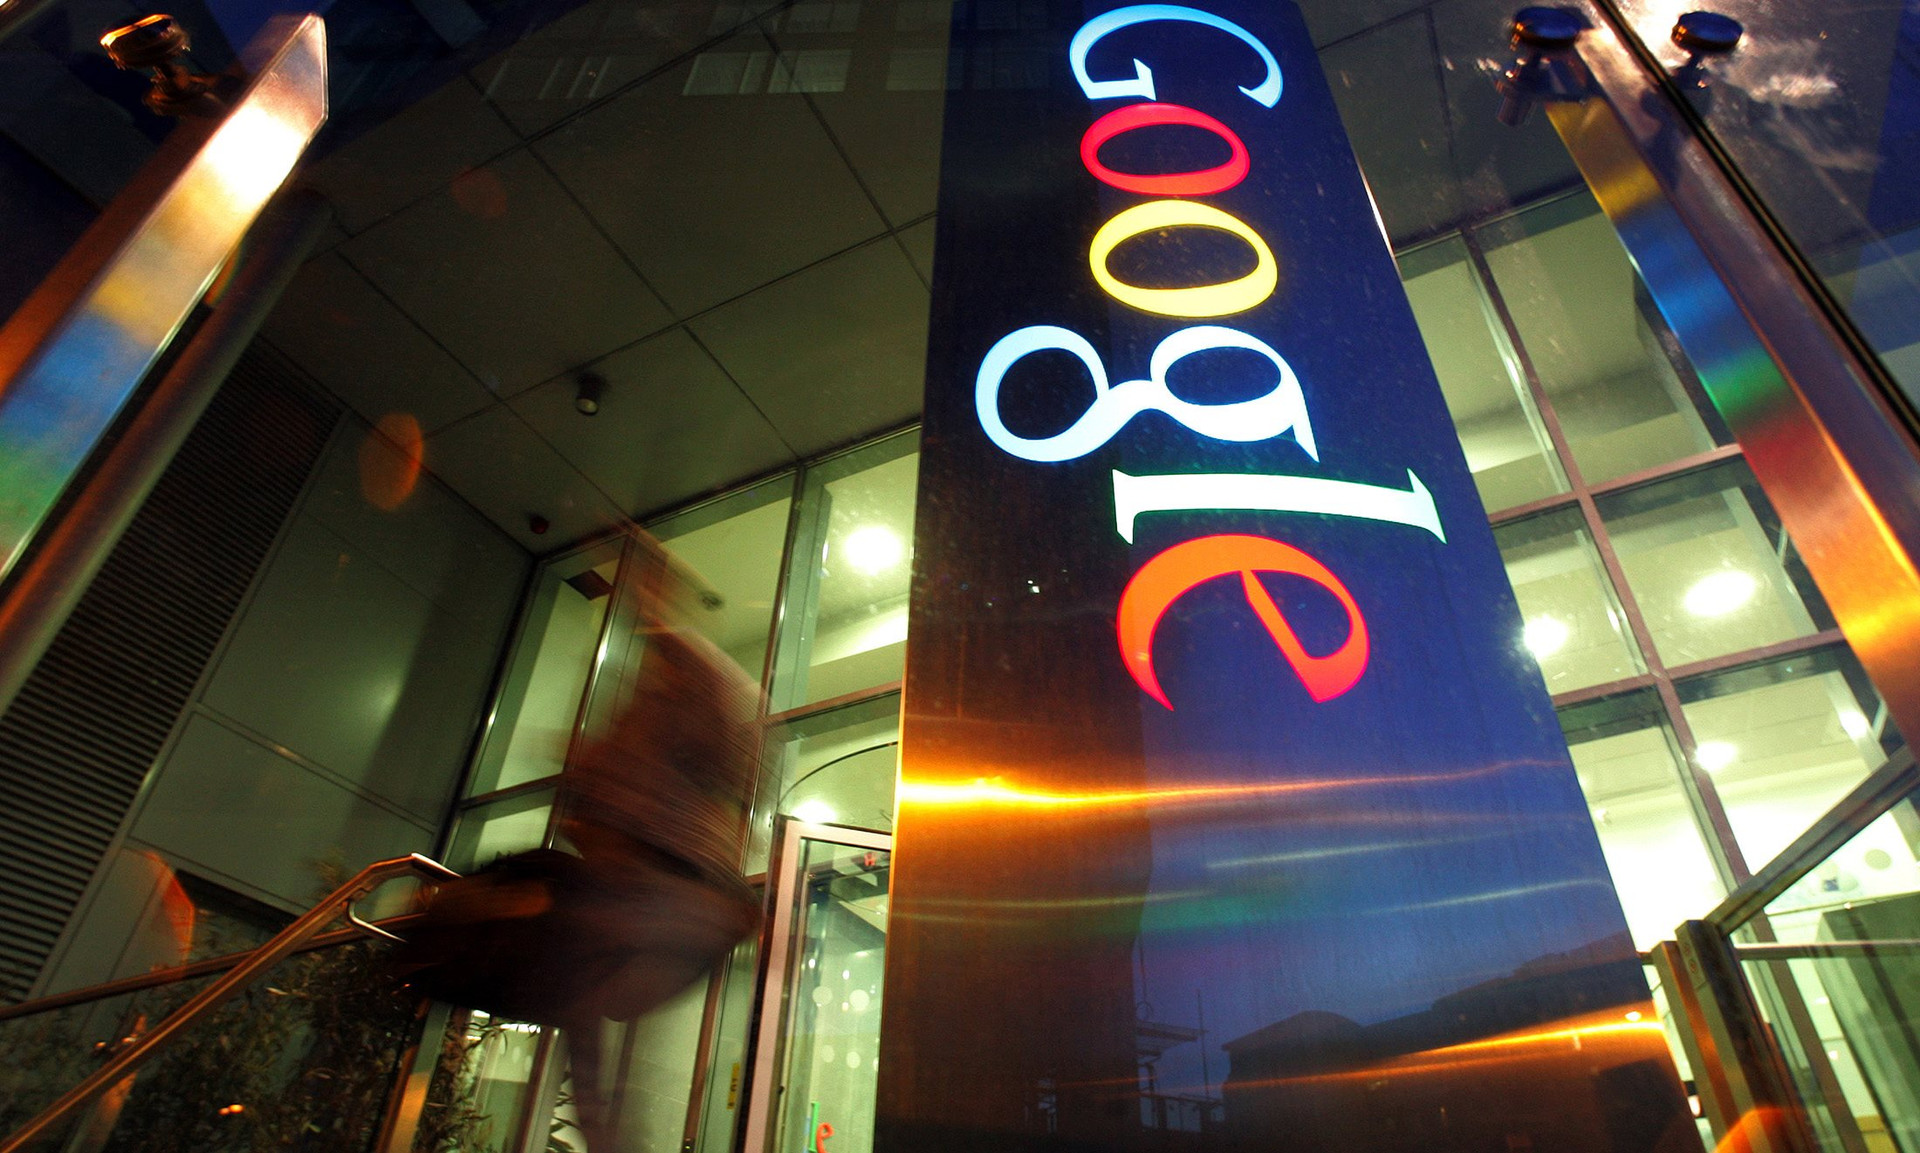 Gạt nước mắt, nhân viên Google viết tâm thư đòi quyền lợi: 'Đừng trở nên xấu xa', chúng tôi phải được thông báo sa thải đàng hoàng và nói lời tạm biệt - Ảnh 2.